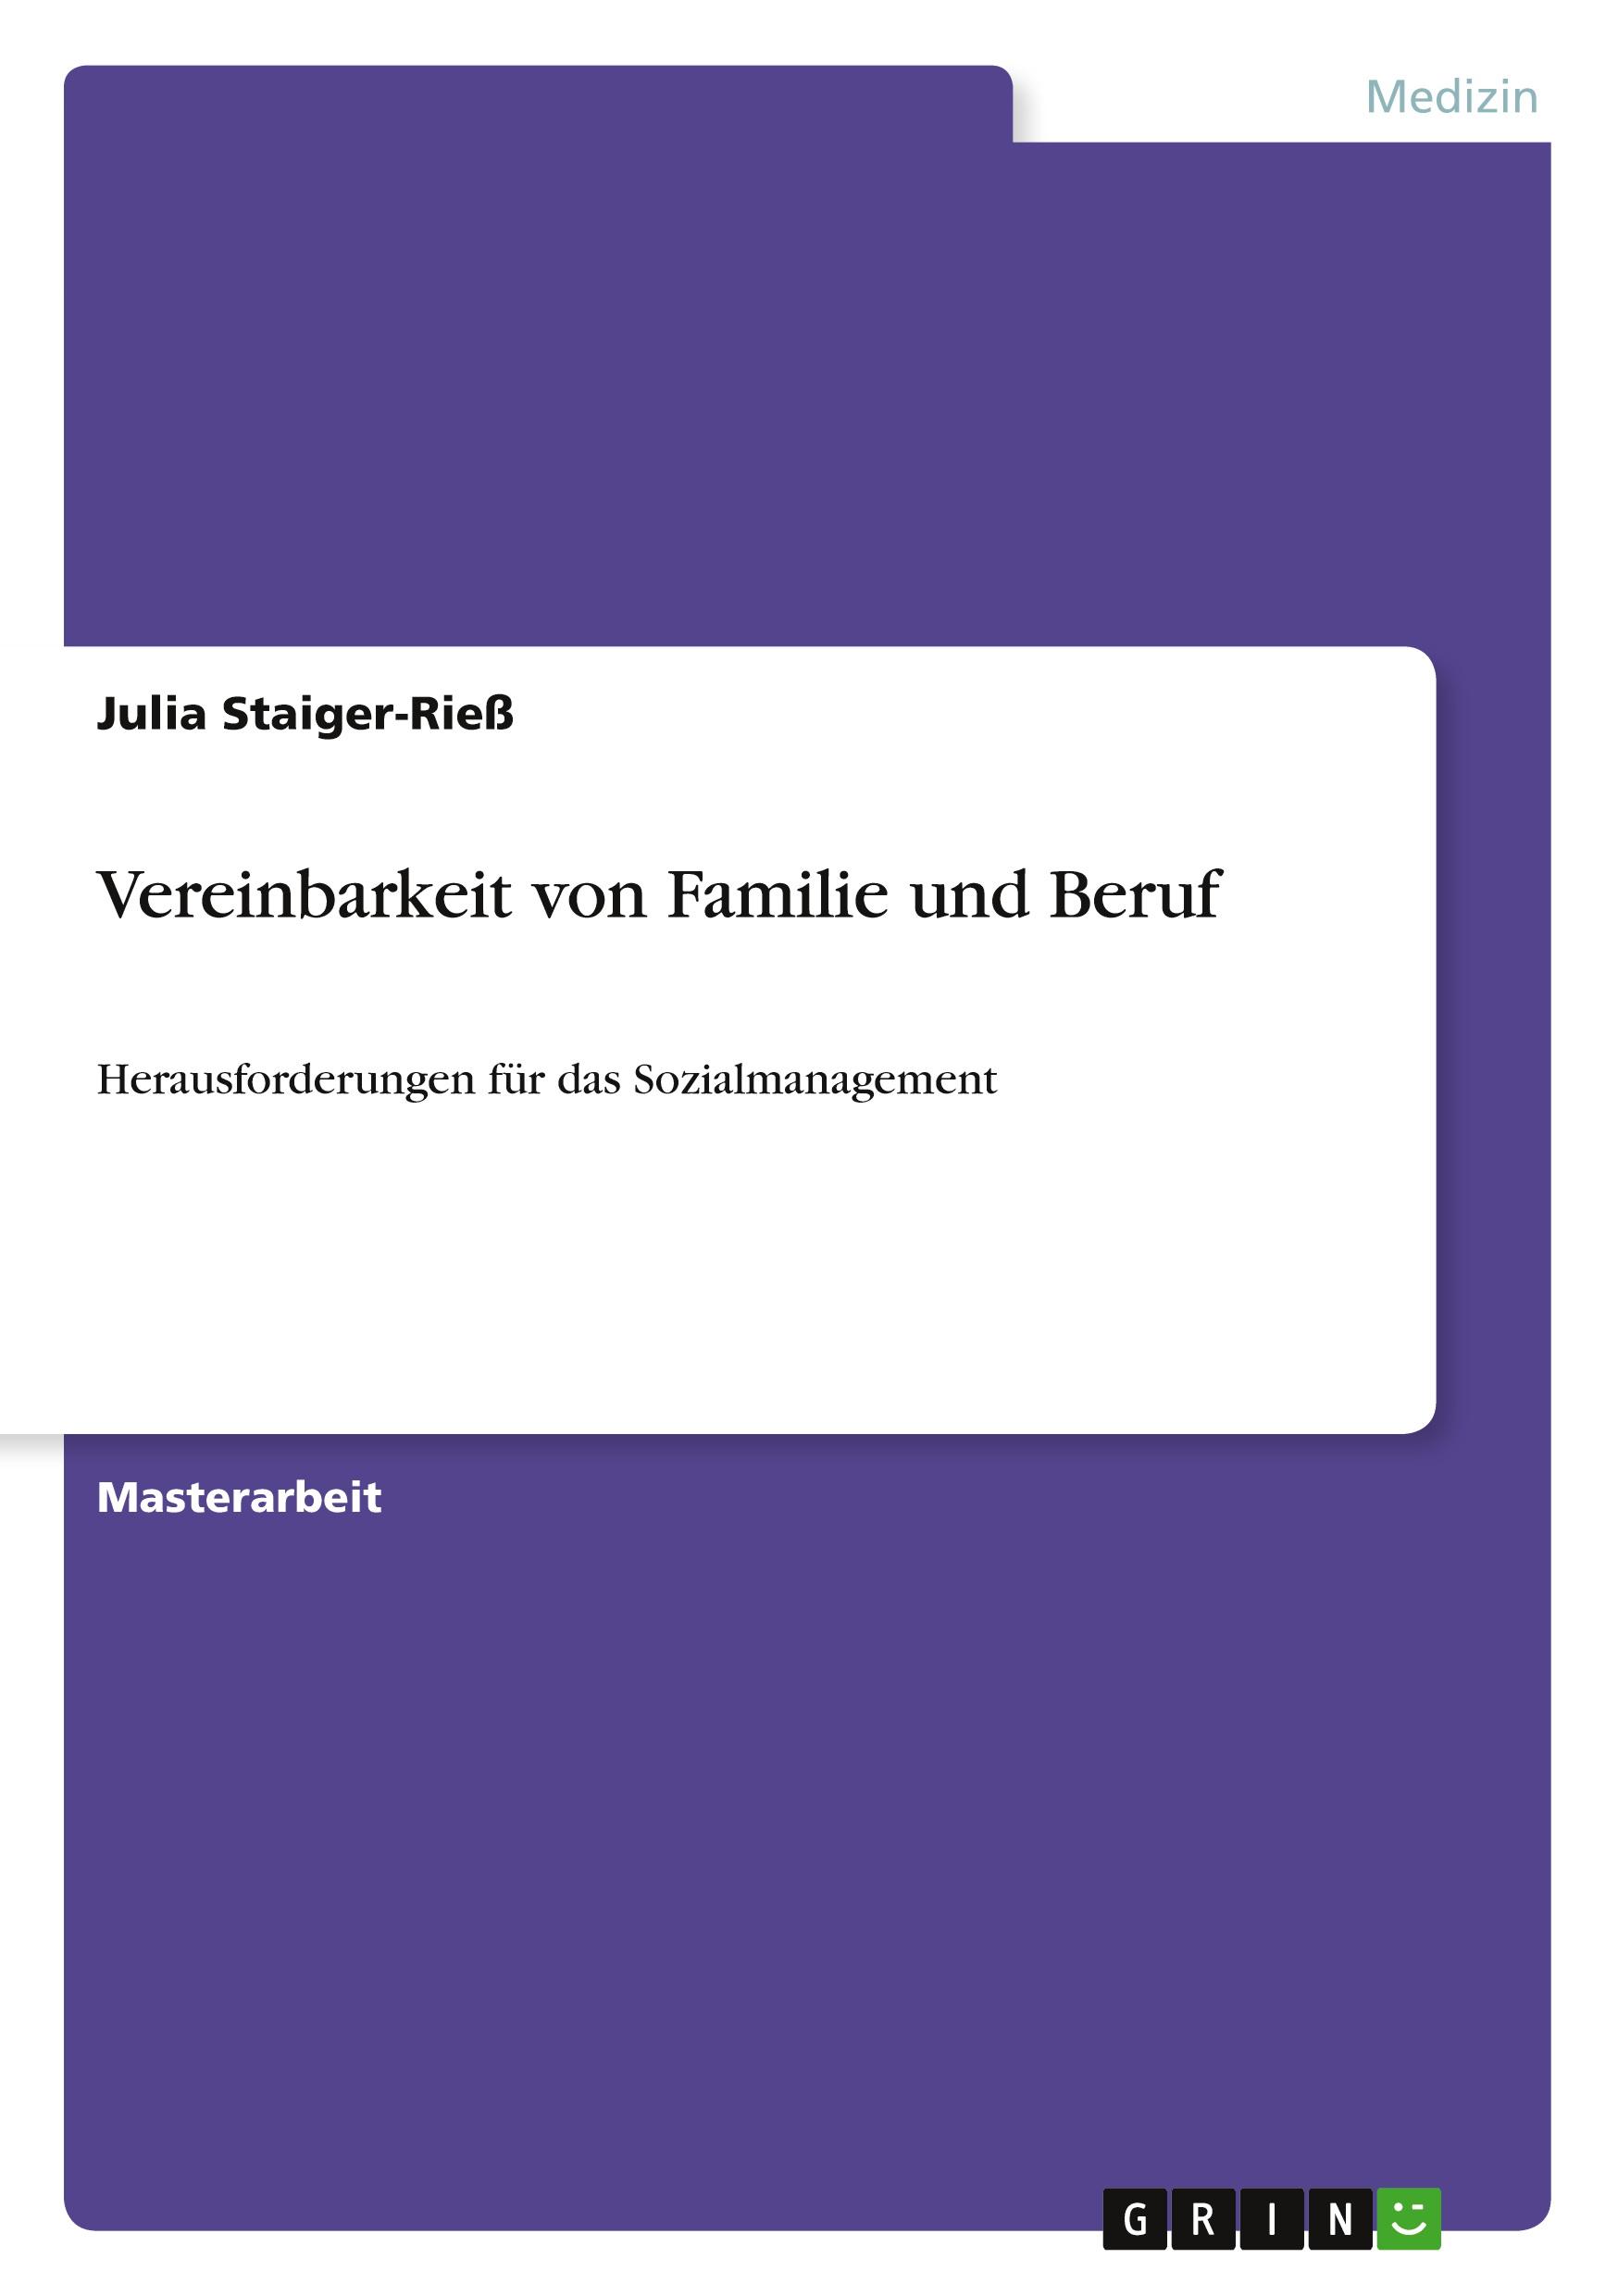 Vereinbarkeit von Familie und Beruf - Staiger-Riess, Julia